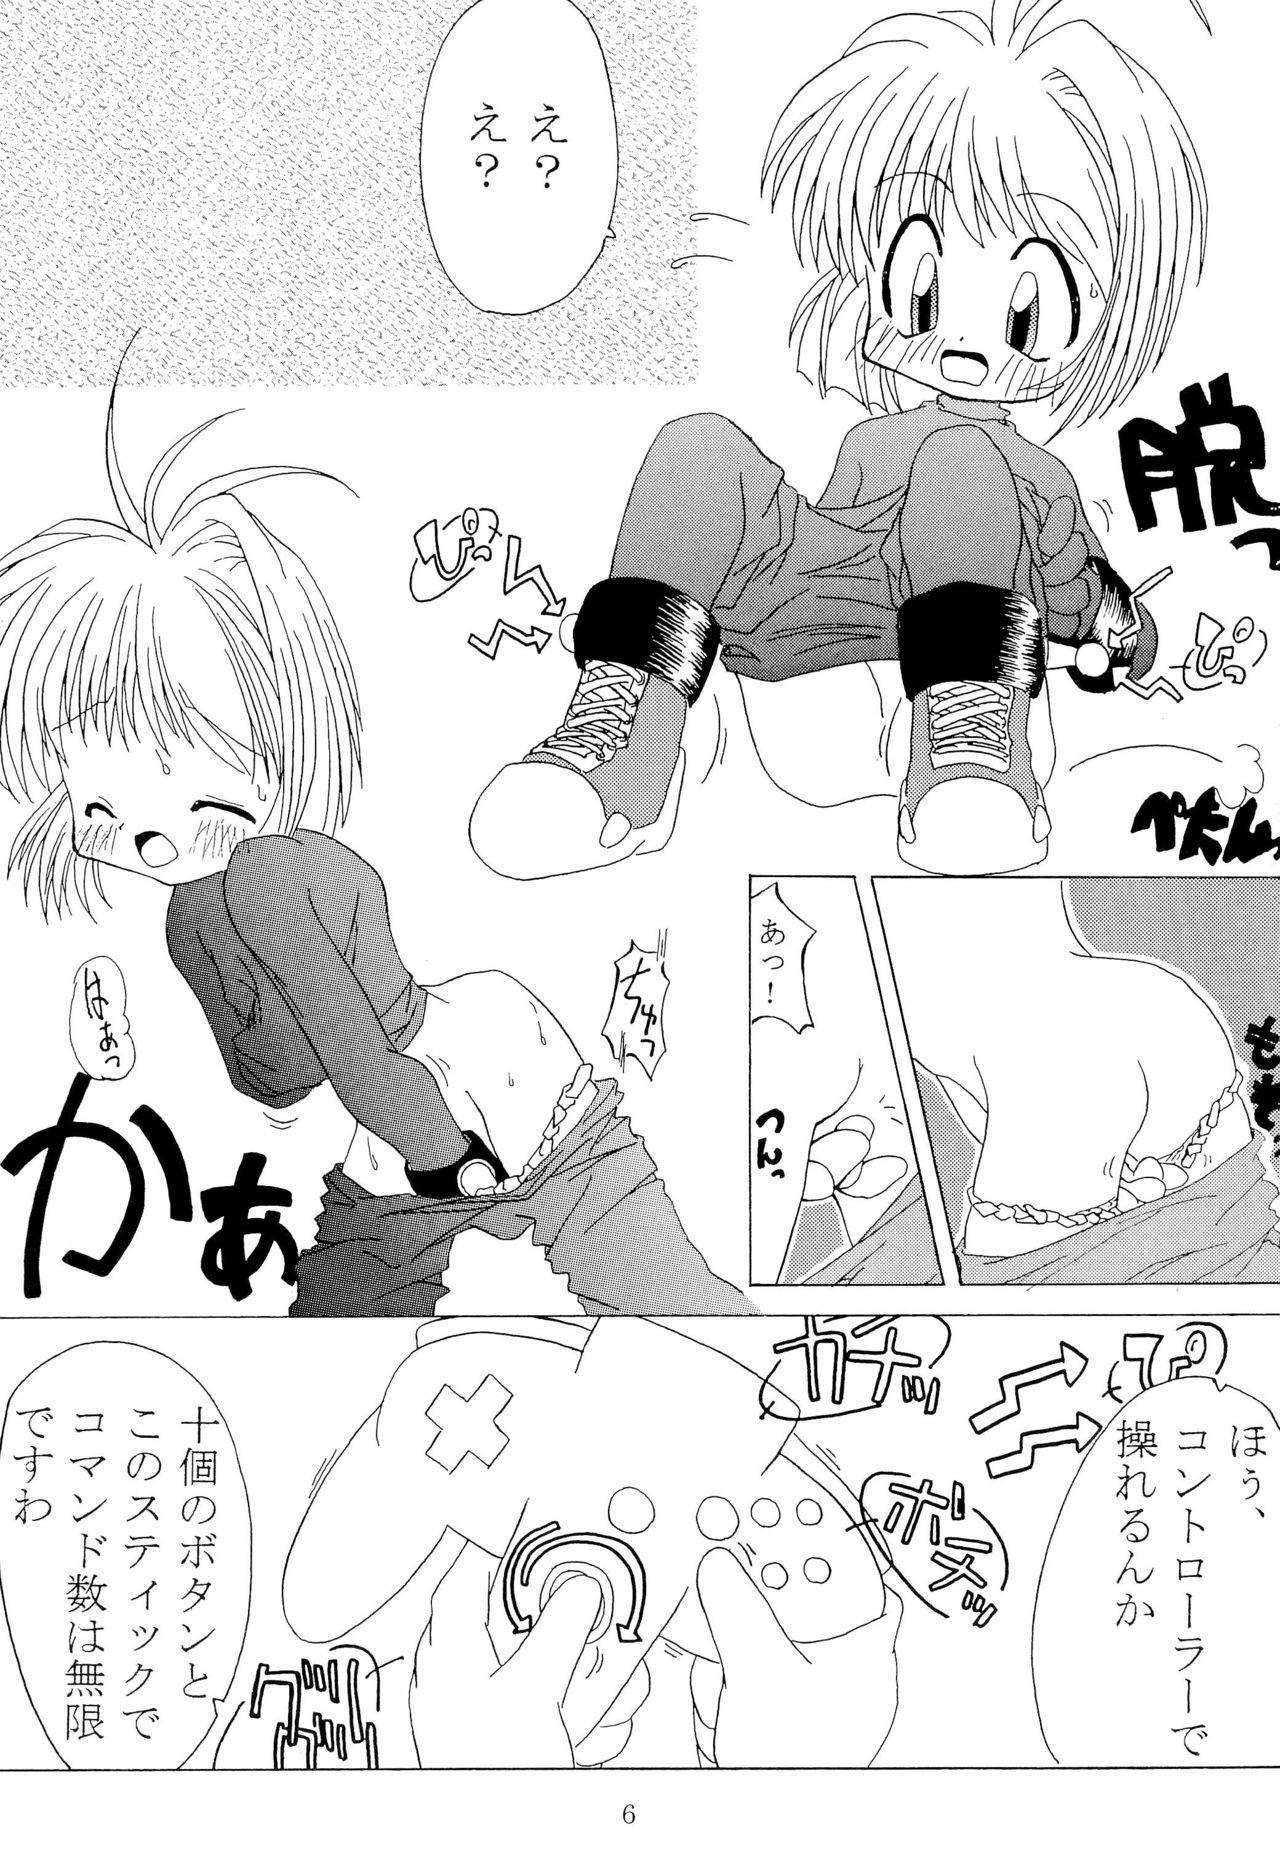 Trap BABELCAPTOR - Cardcaptor sakura Sakura taisen | sakura wars Aunt - Page 8